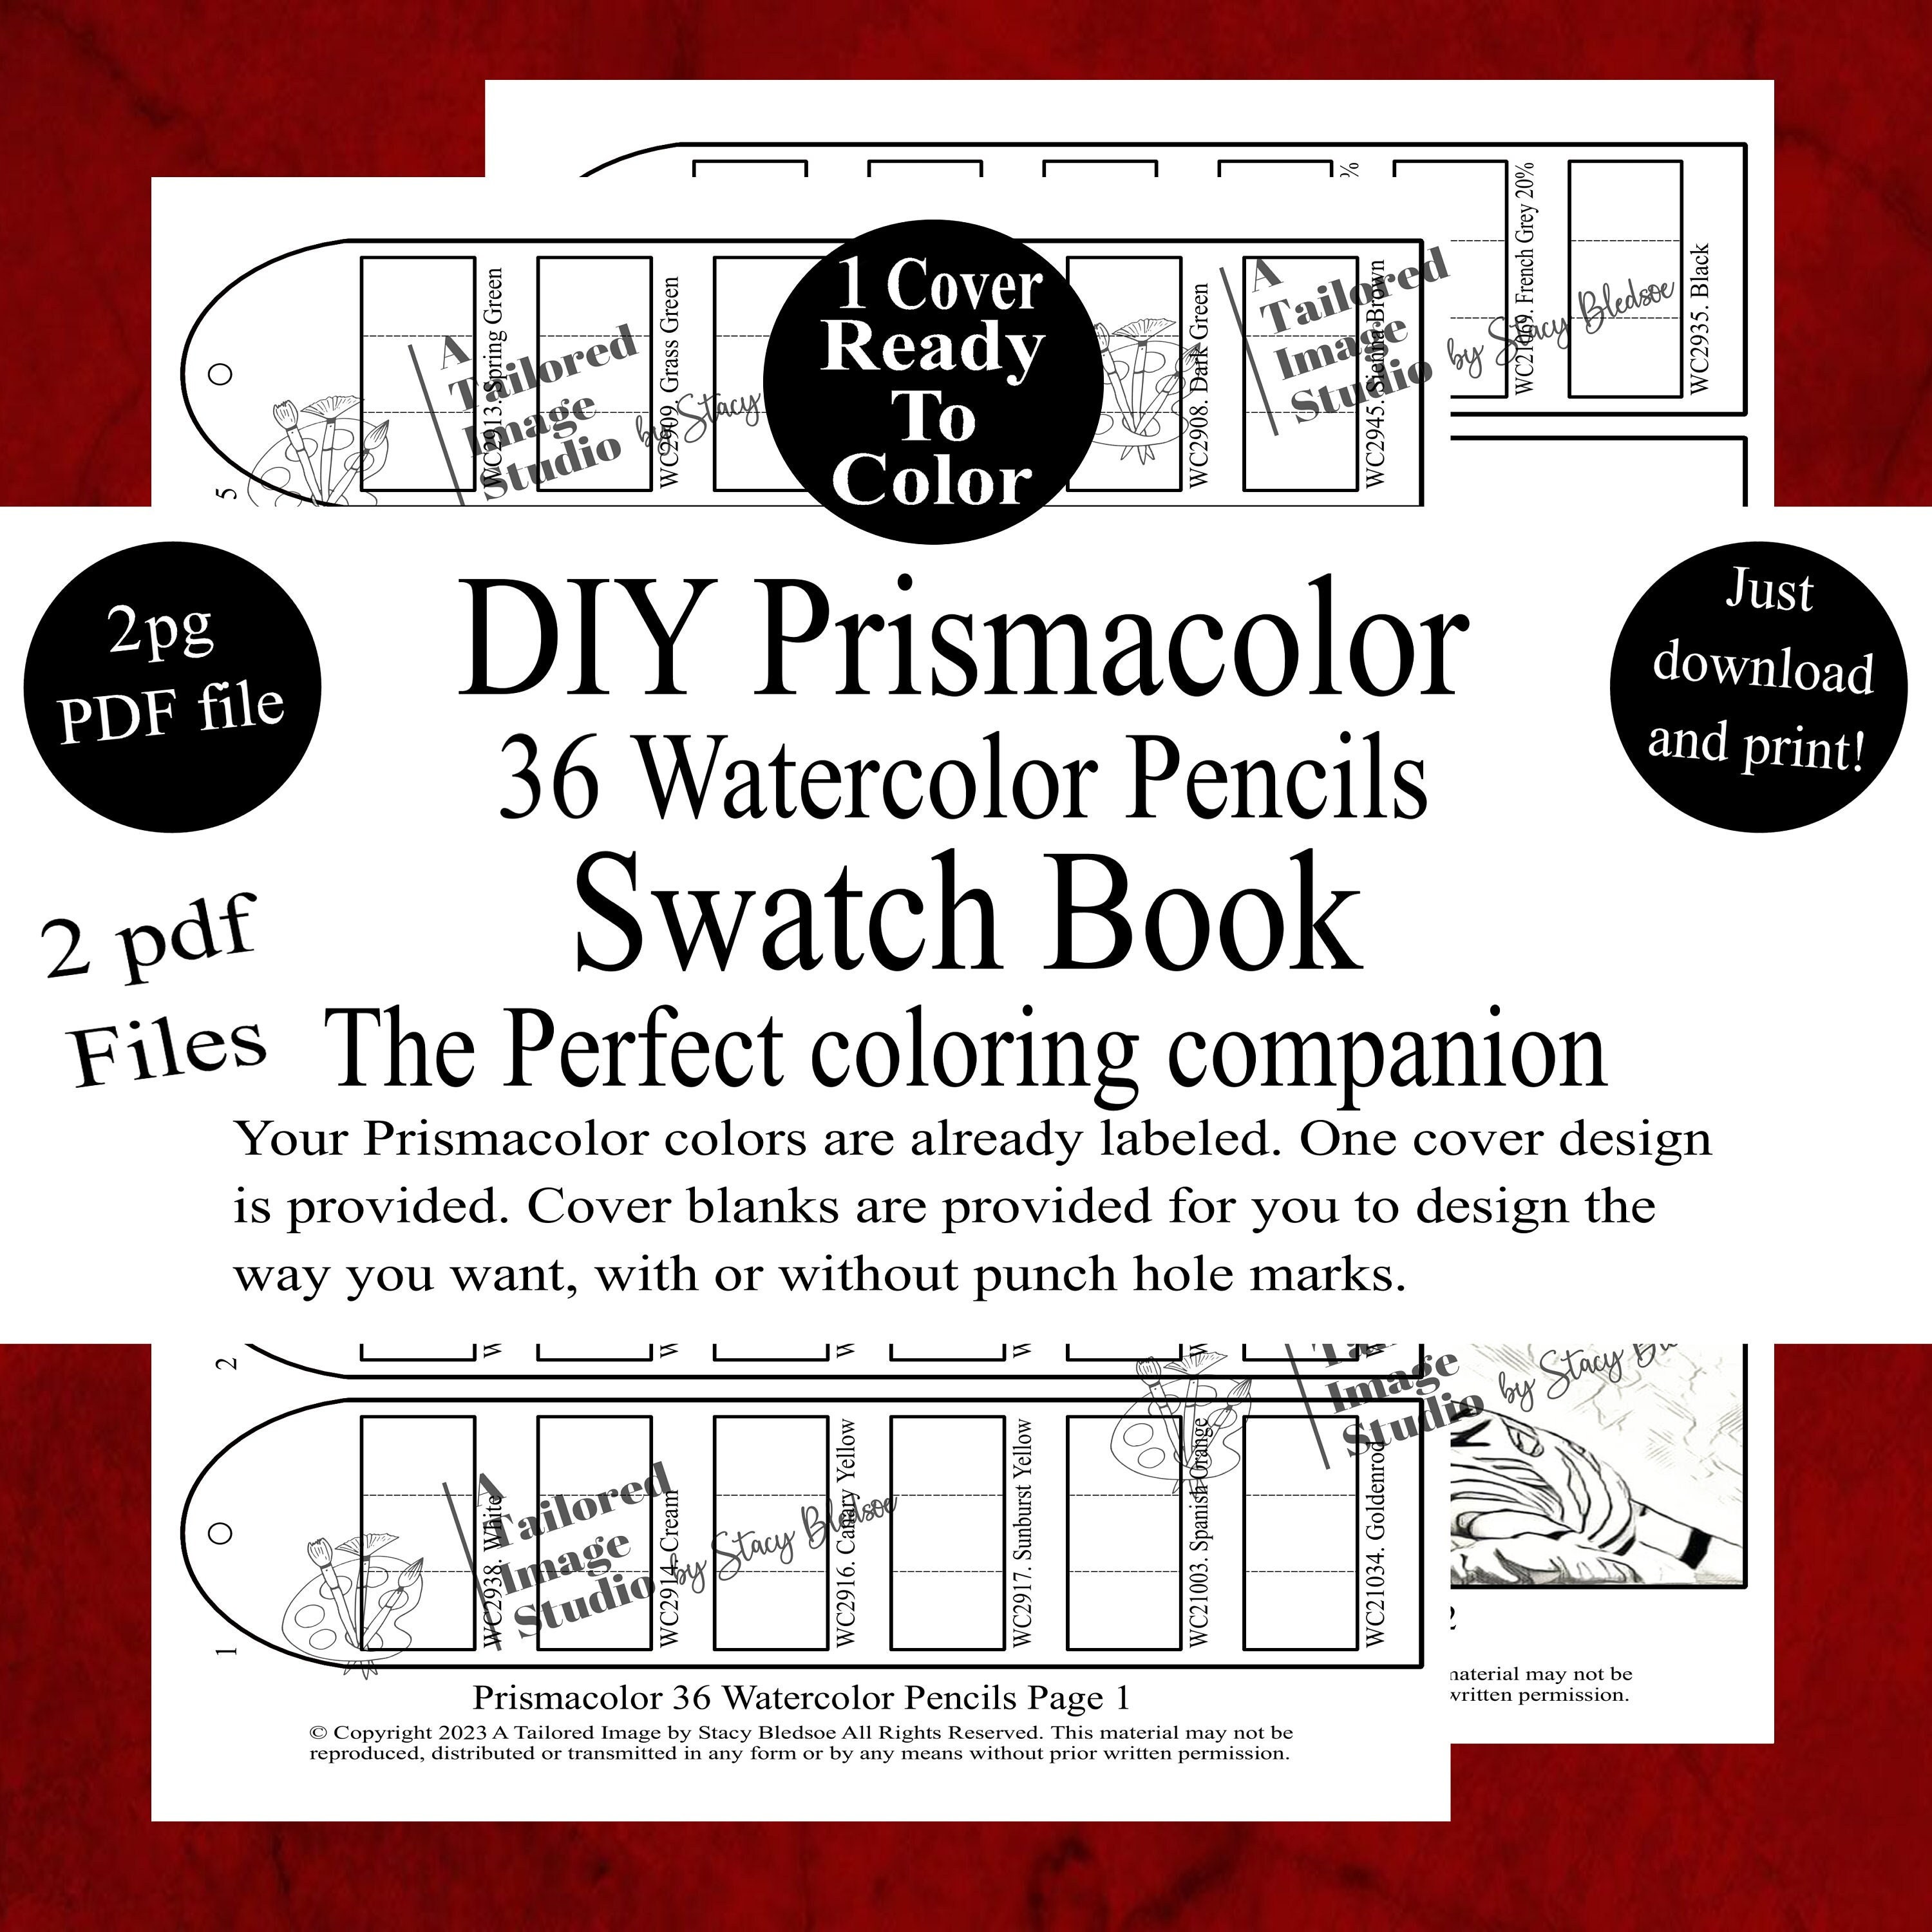 Prismacolor 36 Watercolor Pencils DIY Swatch Book Style 1 